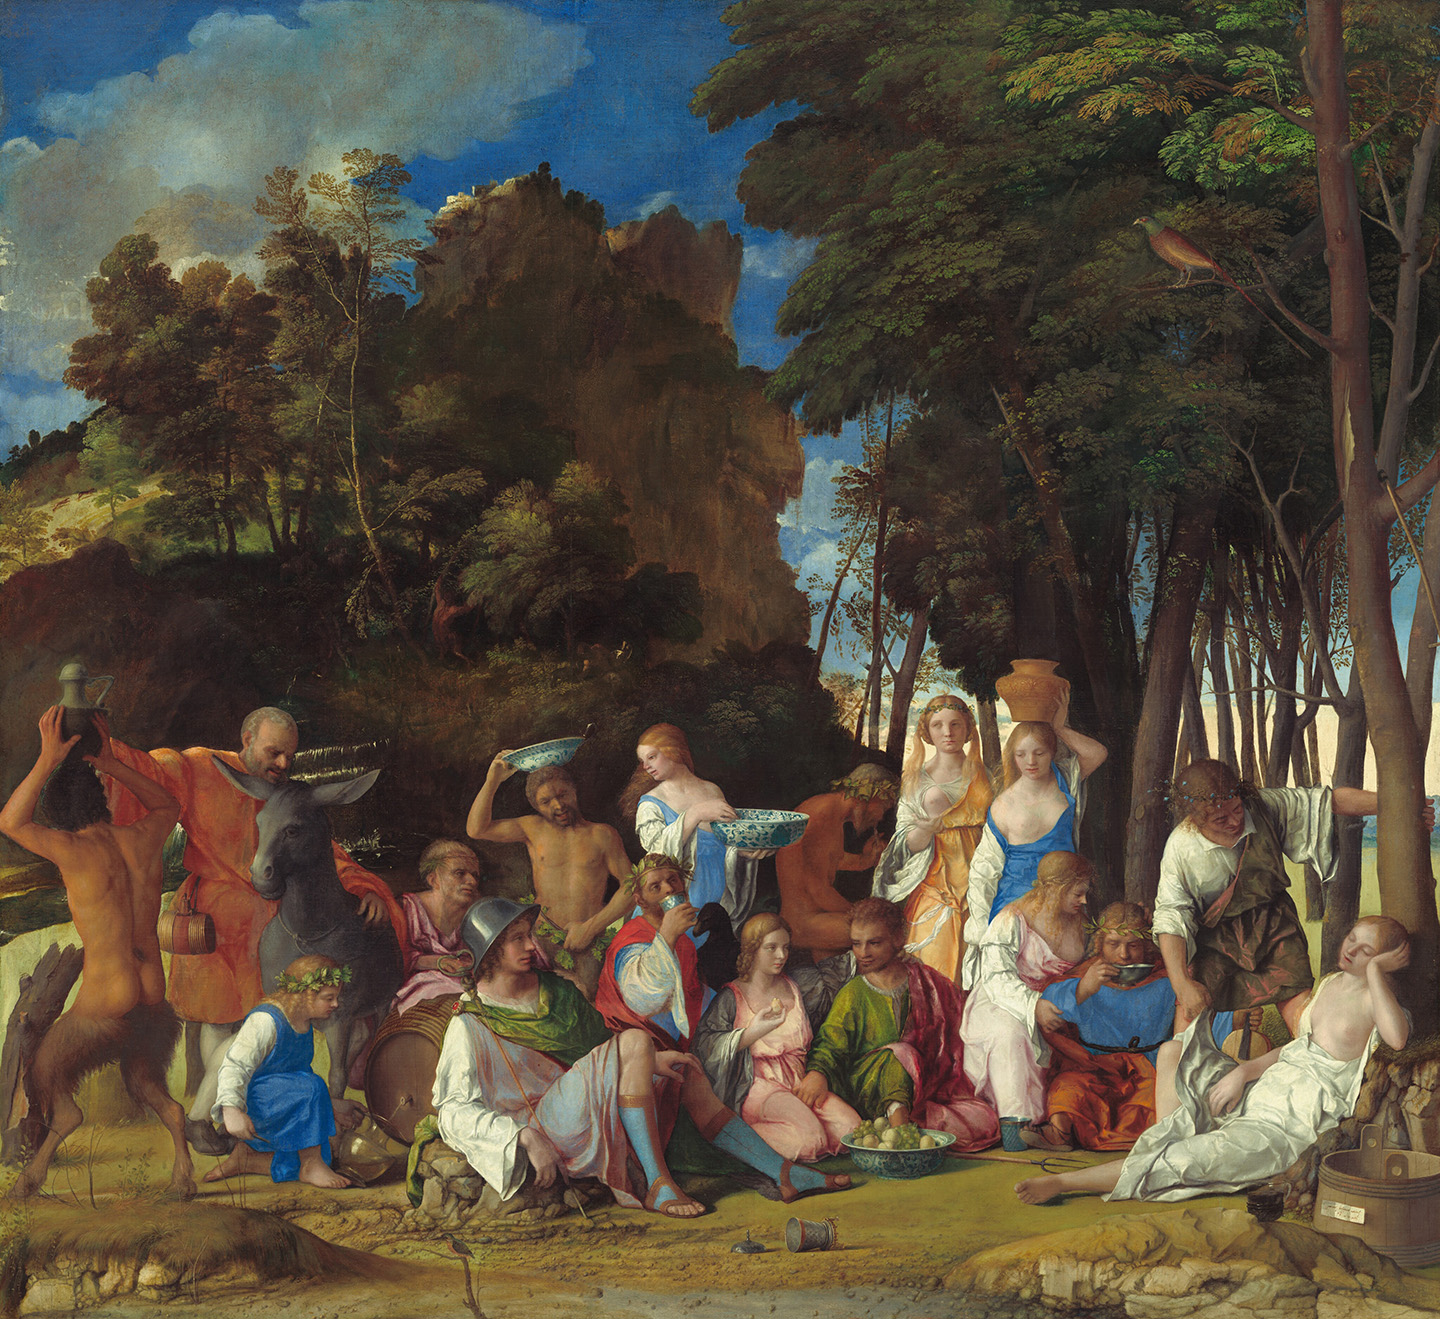 Bức tranh “The Feast of the Gods” (Yến tiệc của các vị Thần) của hai danh họa Giovanni Bellini và Titian, vẽ năm 1514 và 1529. Tranh sơn dầu trên vải canvas. Phòng trưng bày Nghệ thuật Quốc gia, thủ đô Hoa Thịnh Đốn. (Ảnh: Tài liệu công cộng)